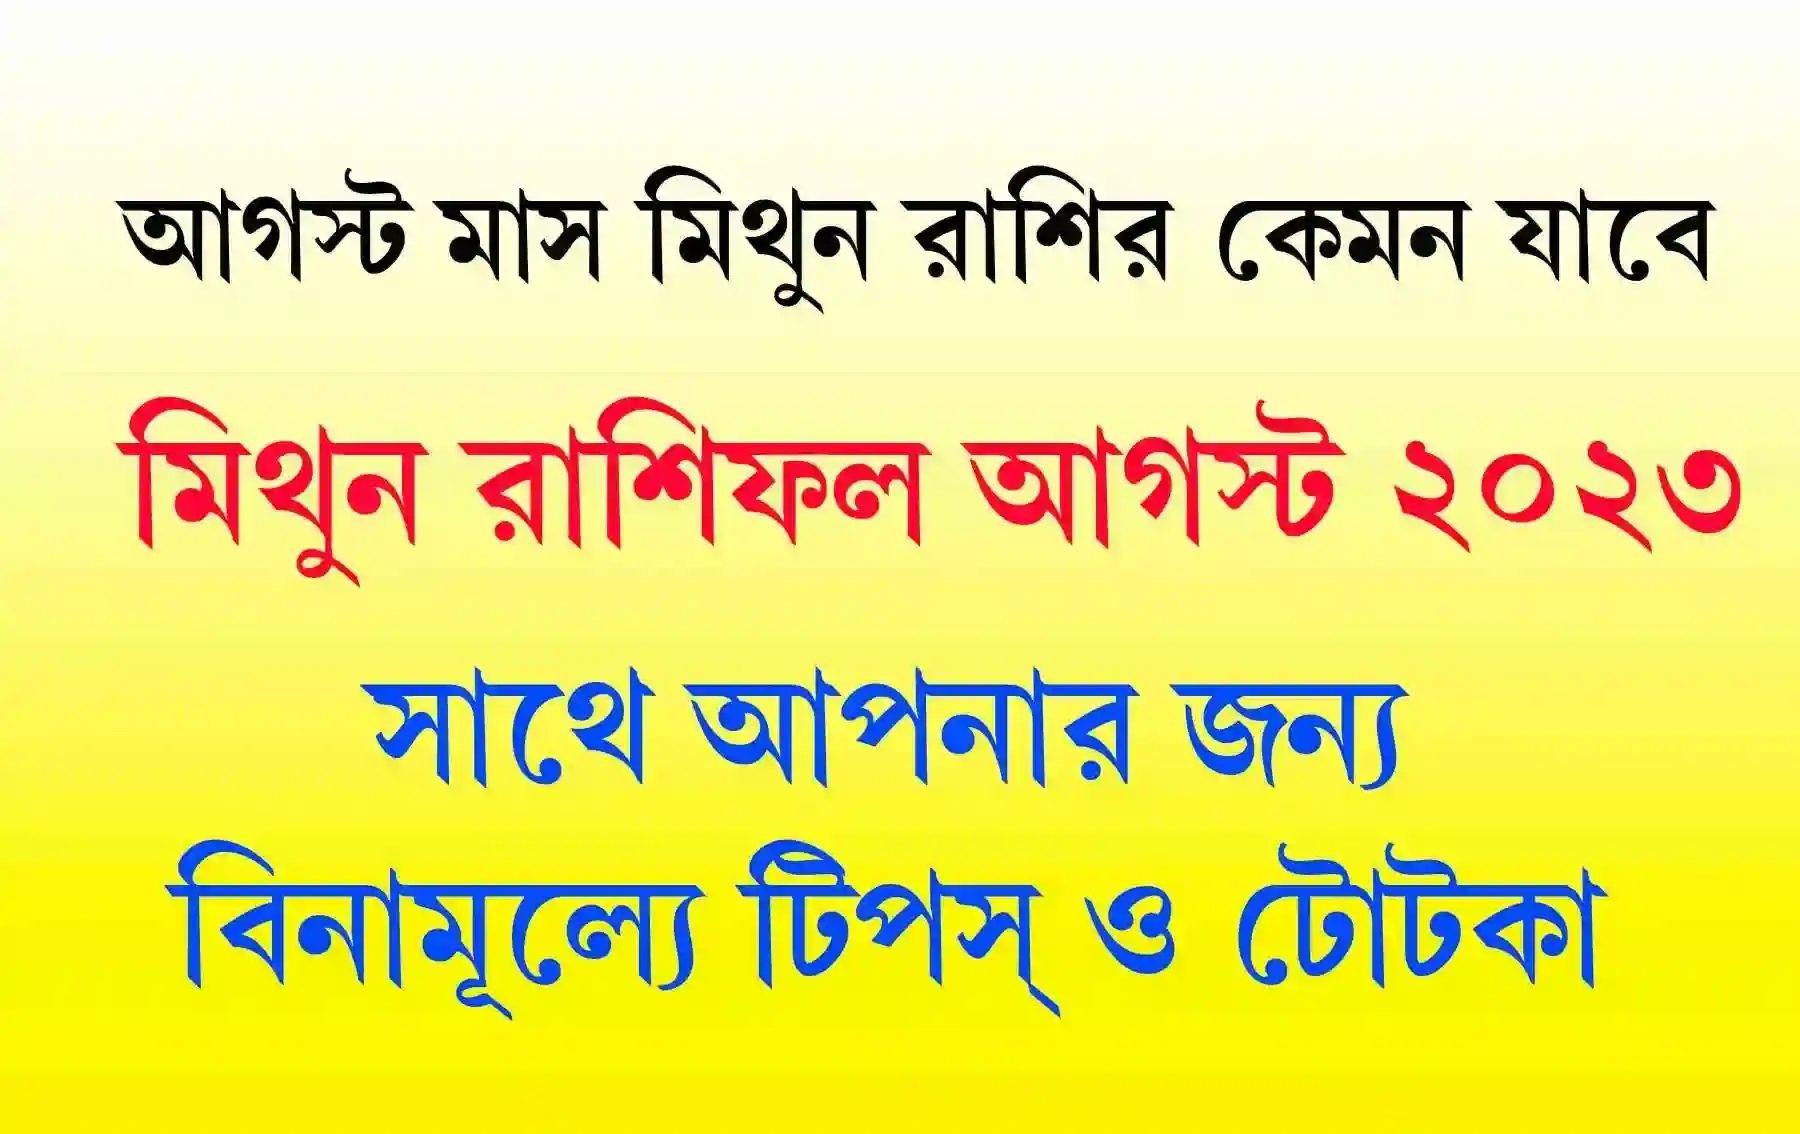 Mithun Rashifal আগস্ট মাস মিথুন রাশিফল কেমন যাবে 2023